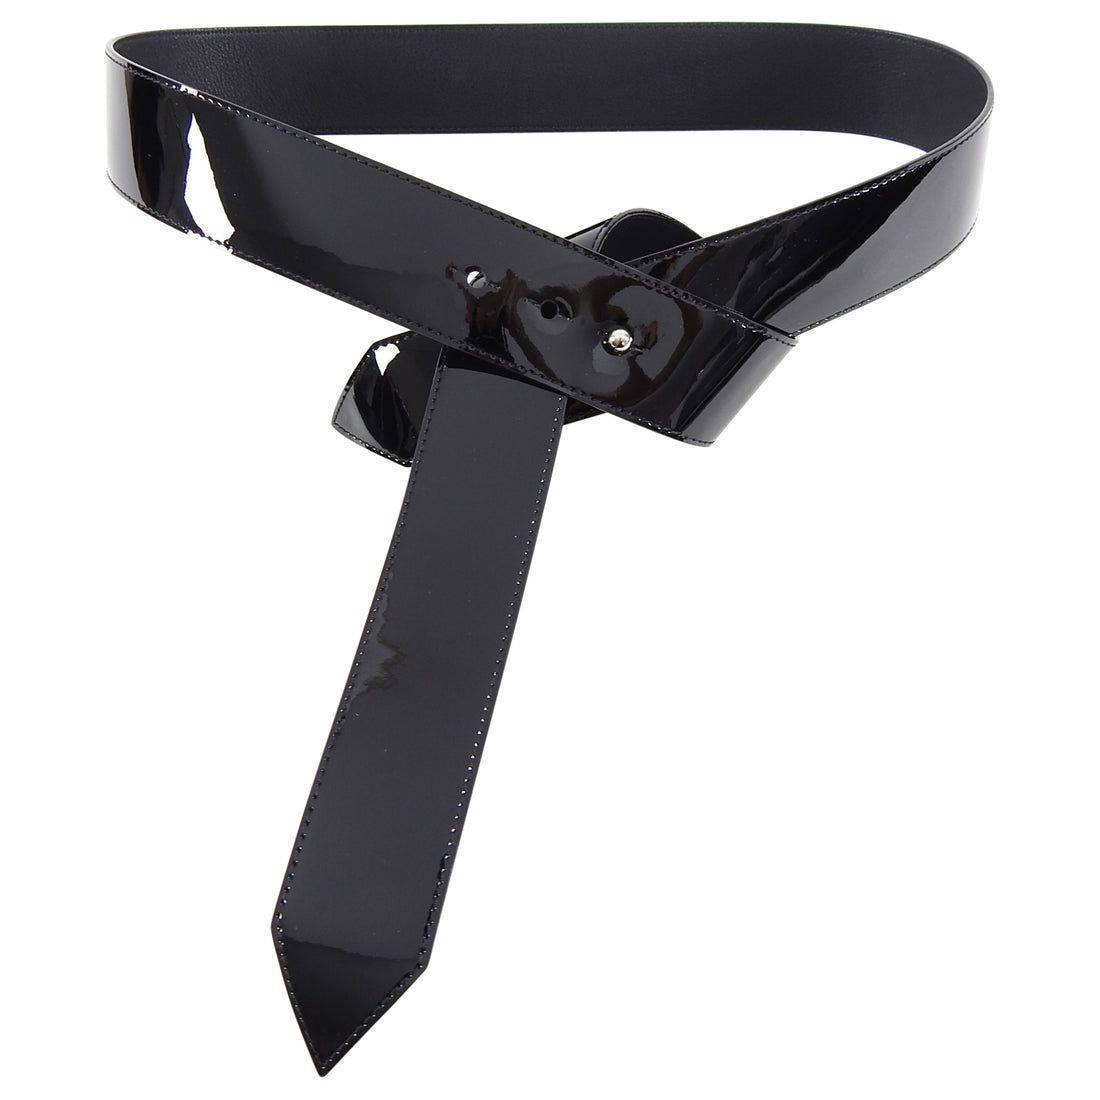 Authentic LOUIS VUITTON Tie The Knot 45mm Belt Black Leather MP146 #S407102